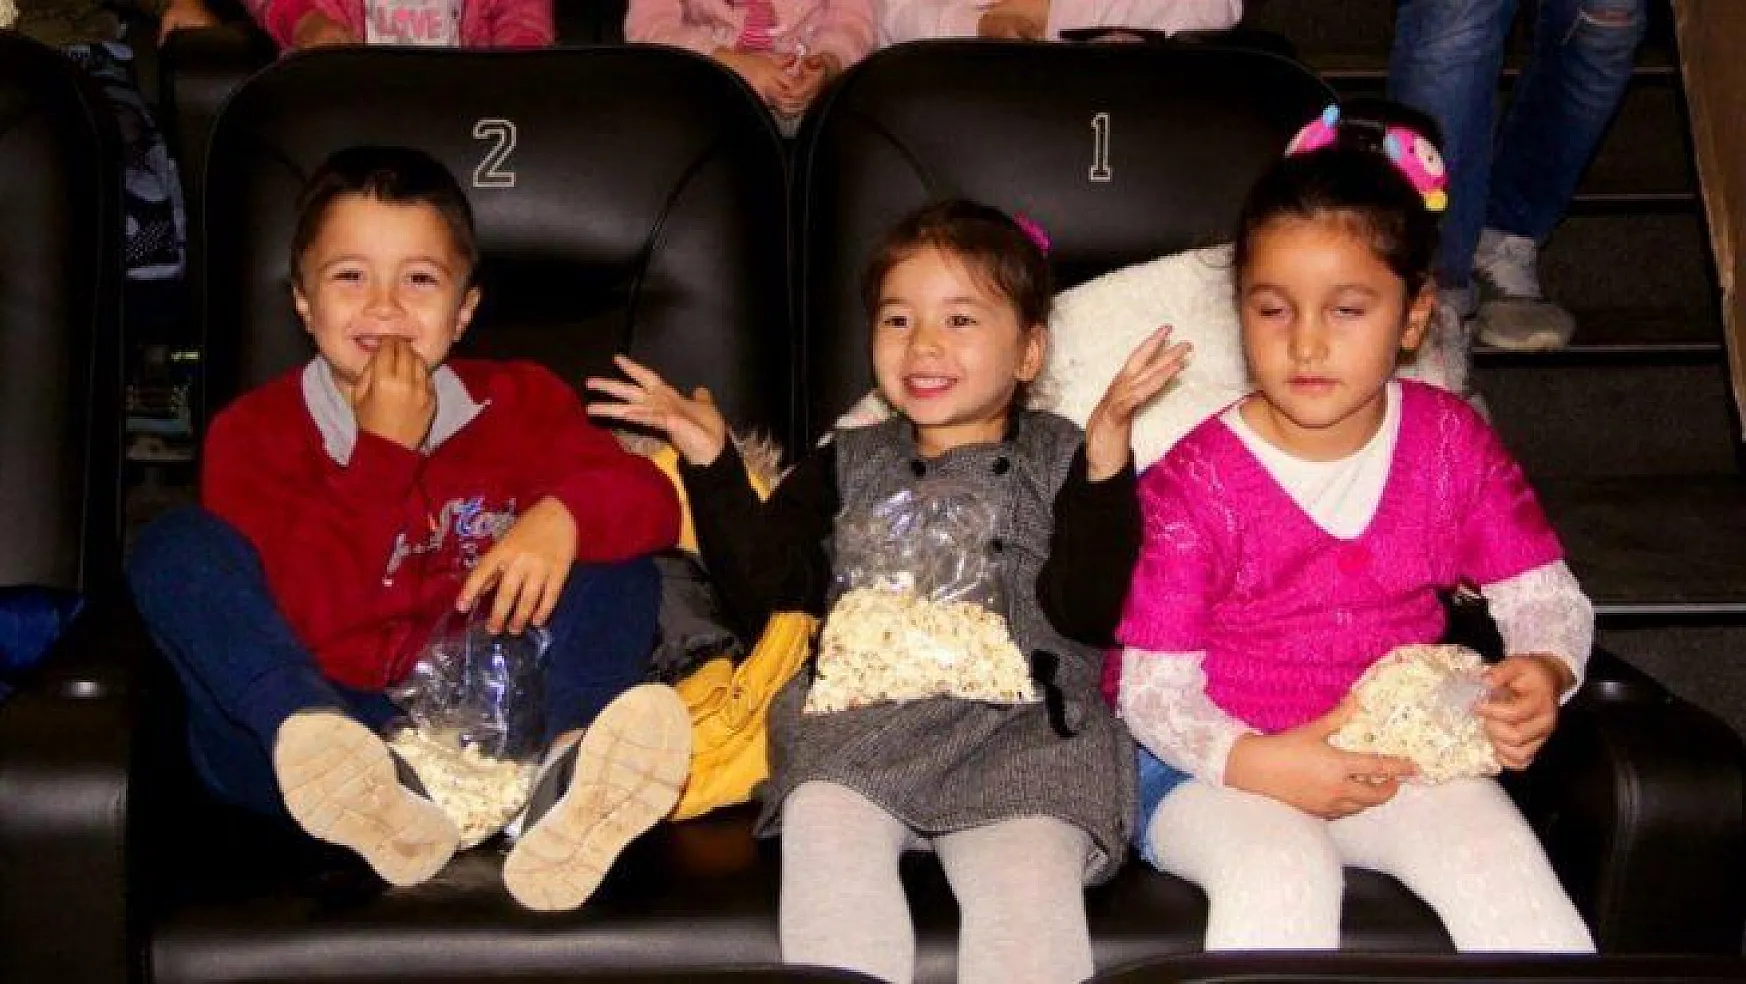 Köy okullarından gelen öğrenciler aileleriyle birlikte film izledi